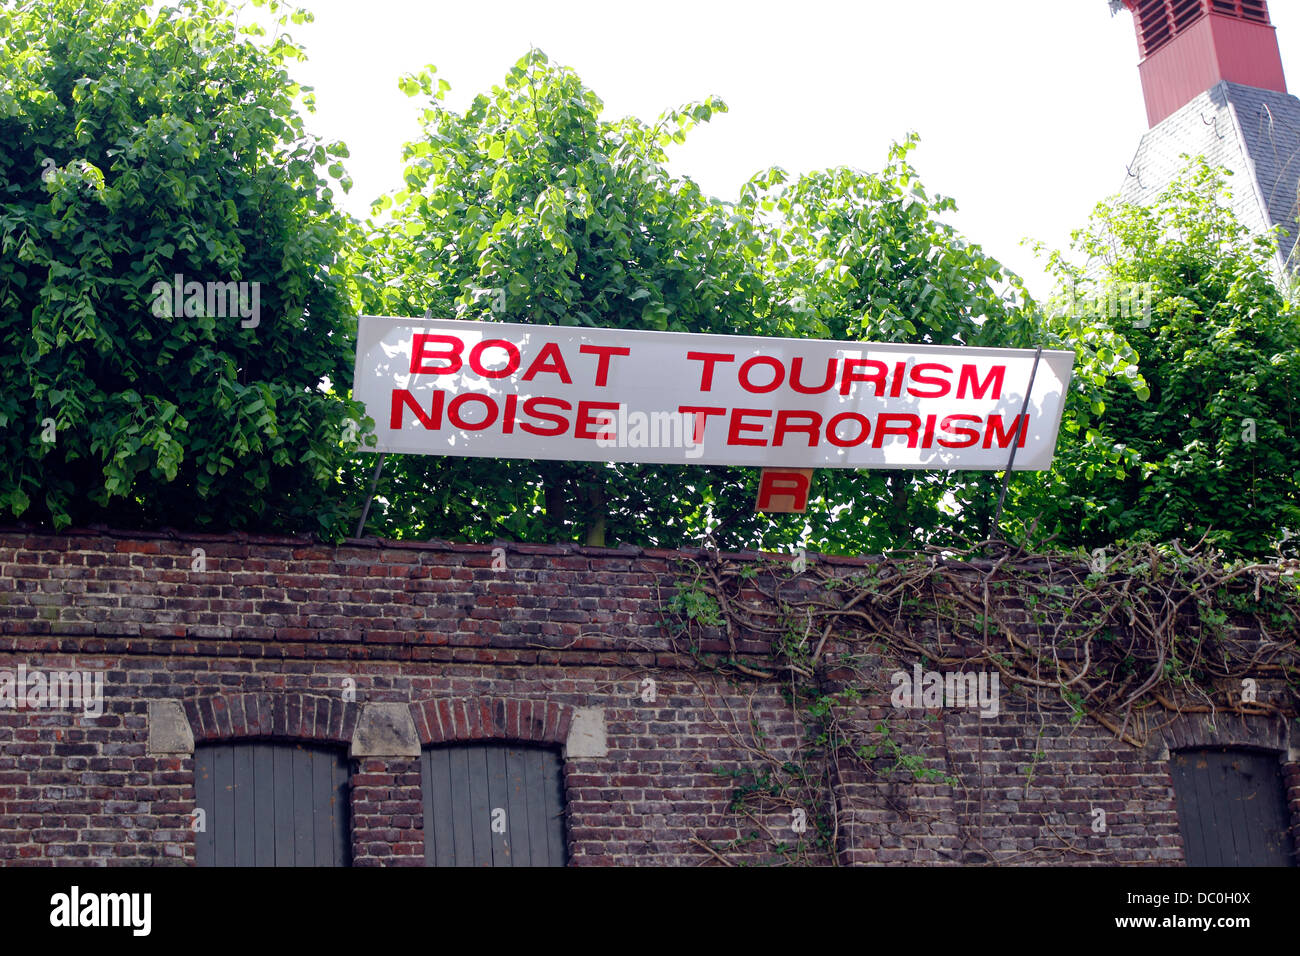 Gand Belgique Europe tour en gondole bateau bateaux bruit signe le terrorisme tourisme Banque D'Images